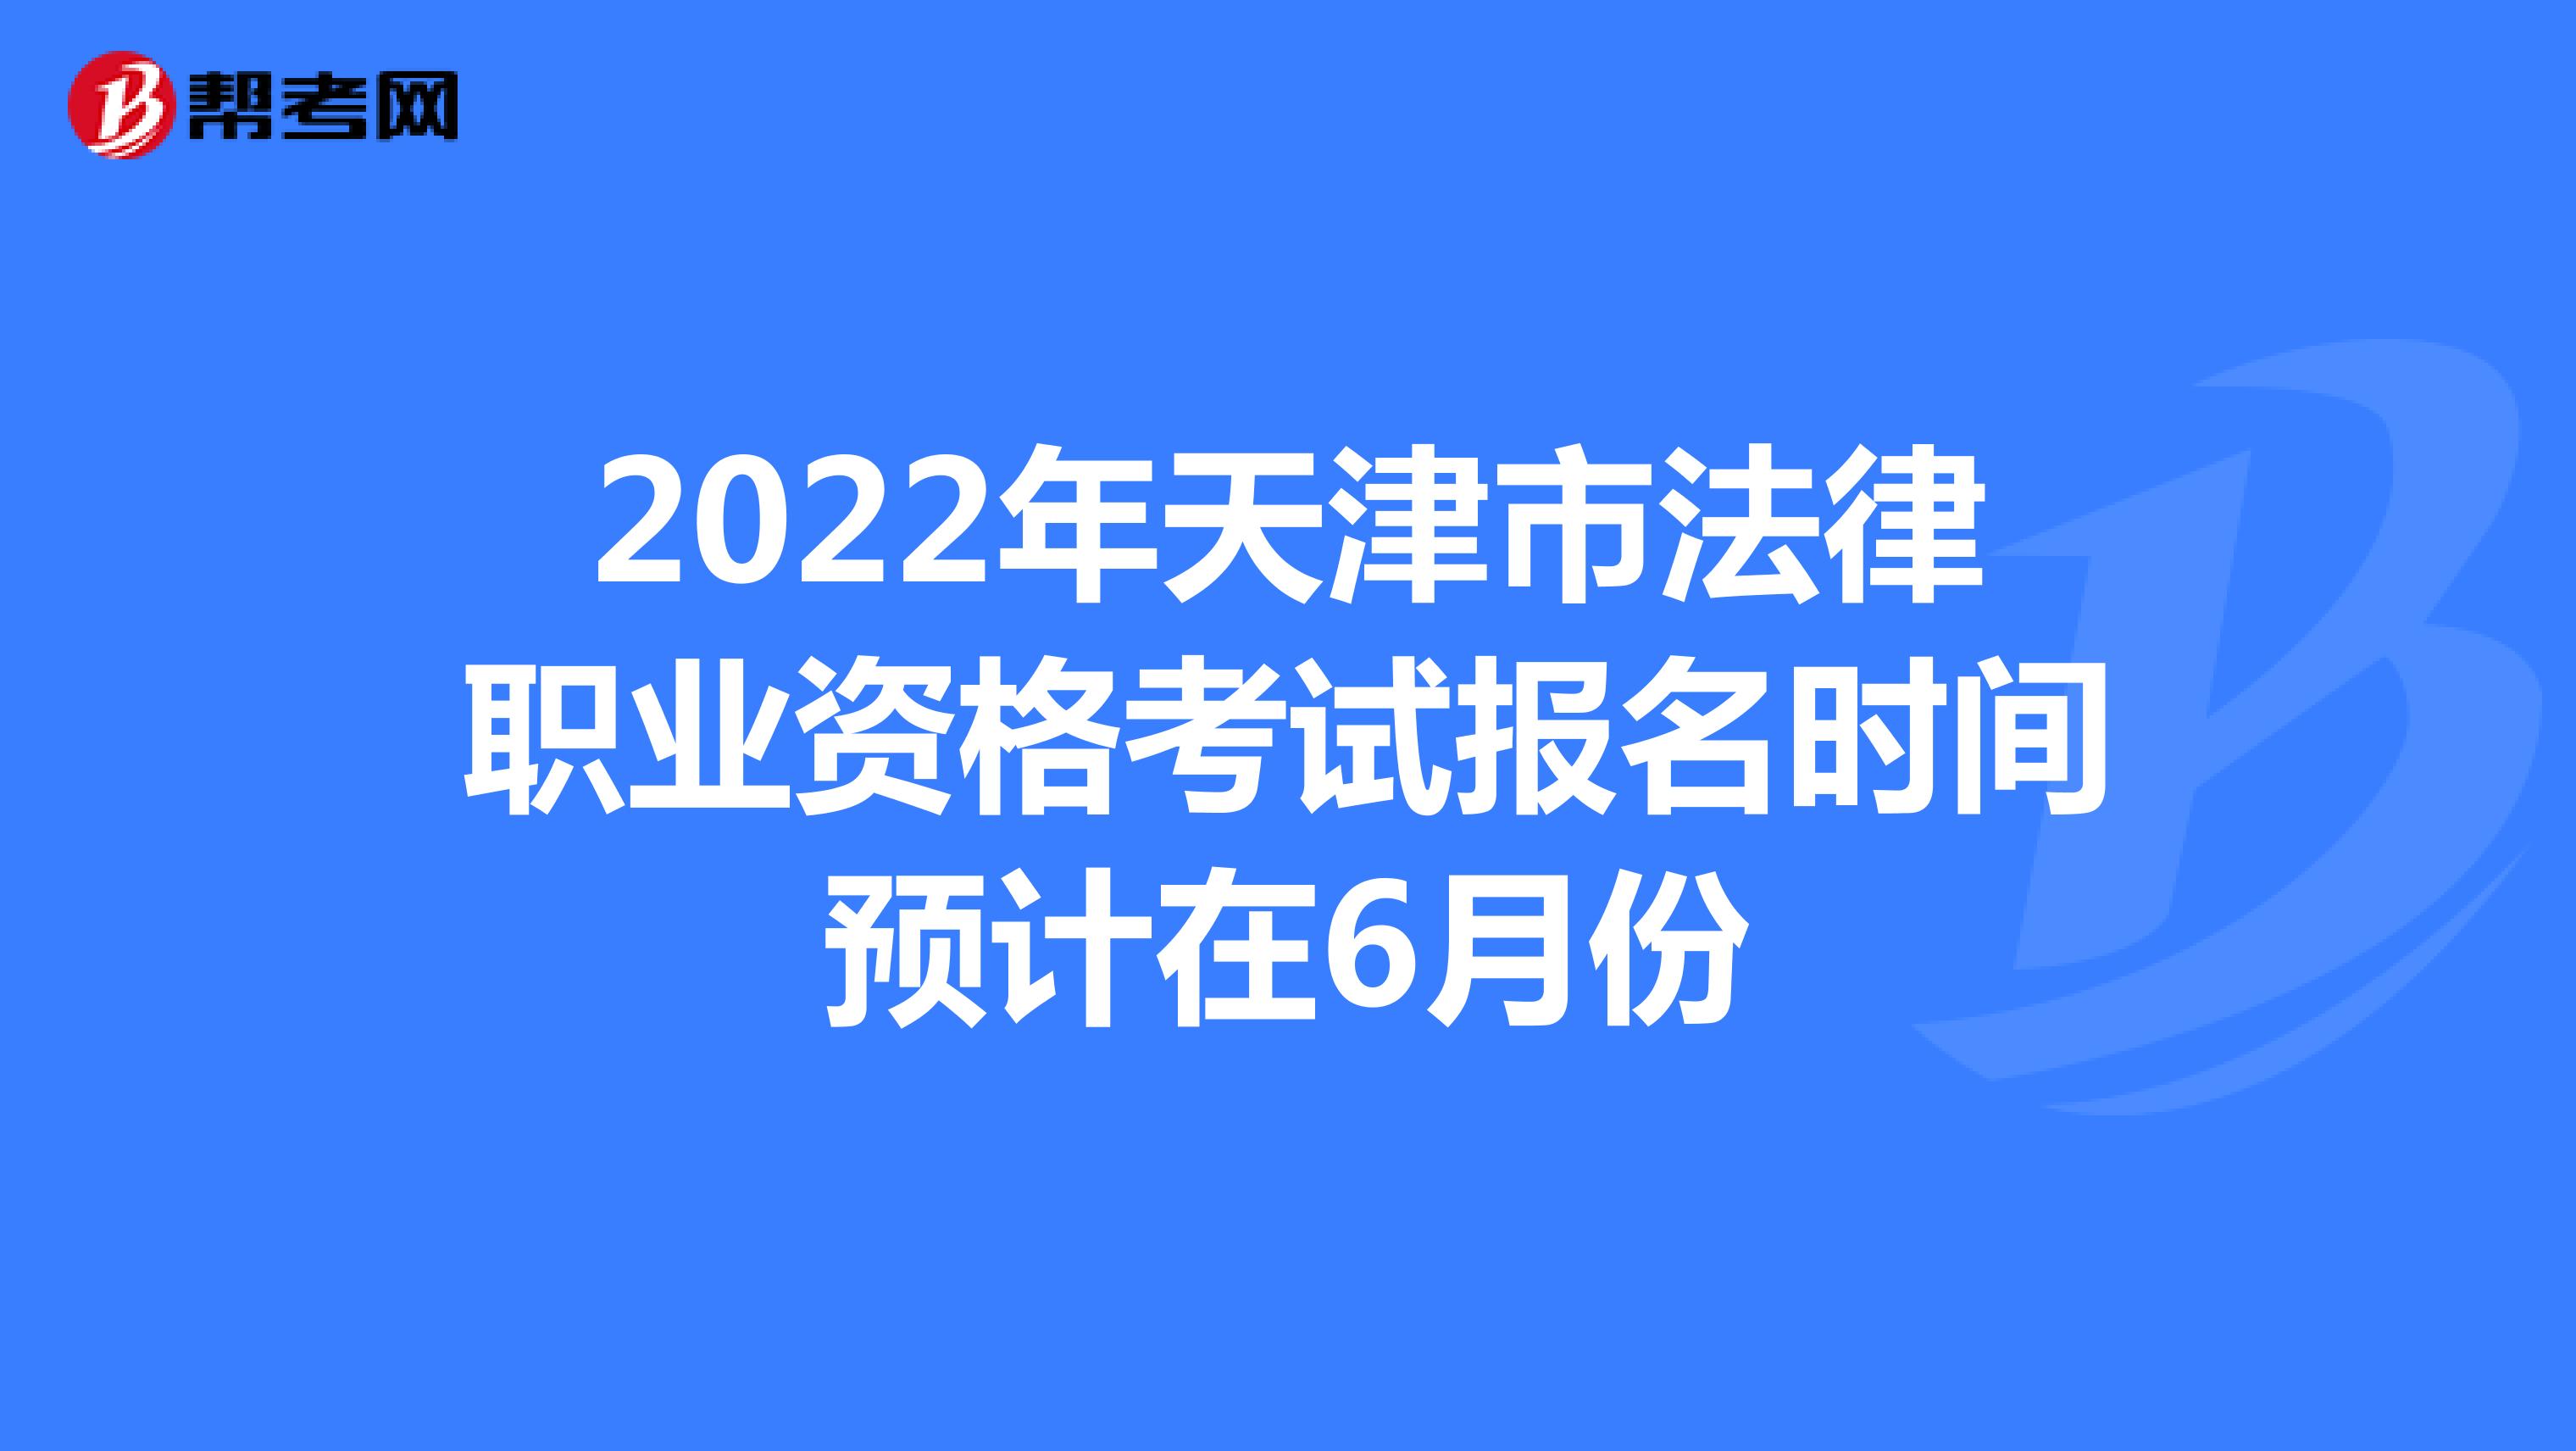 2022年天津市法律职业资格考试报名时间预计在6月份